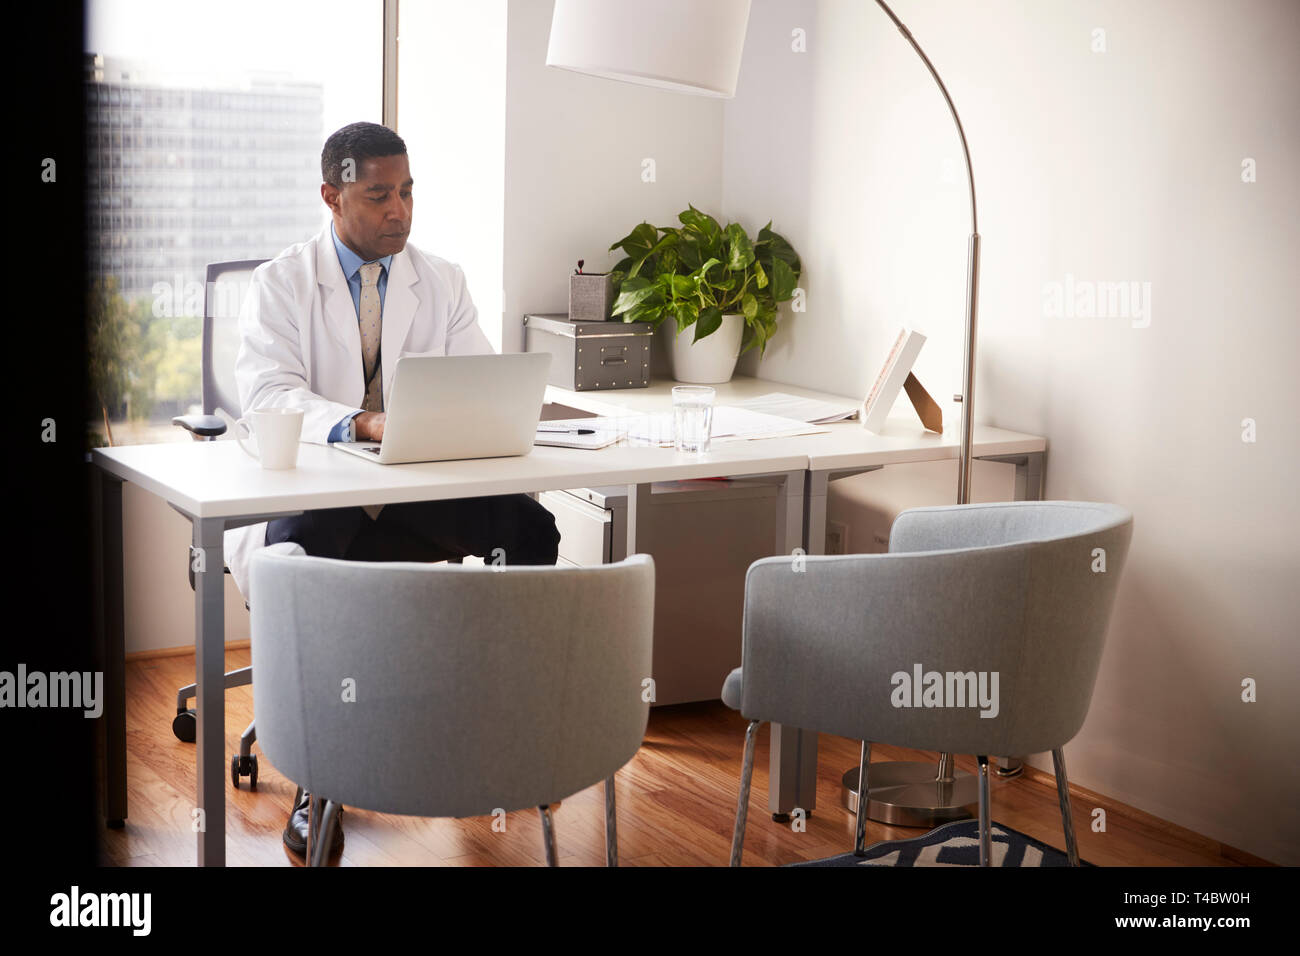 Medico di sesso maschile che indossa mantello bianco in ufficio seduti alla scrivania che lavora sul computer portatile Foto Stock